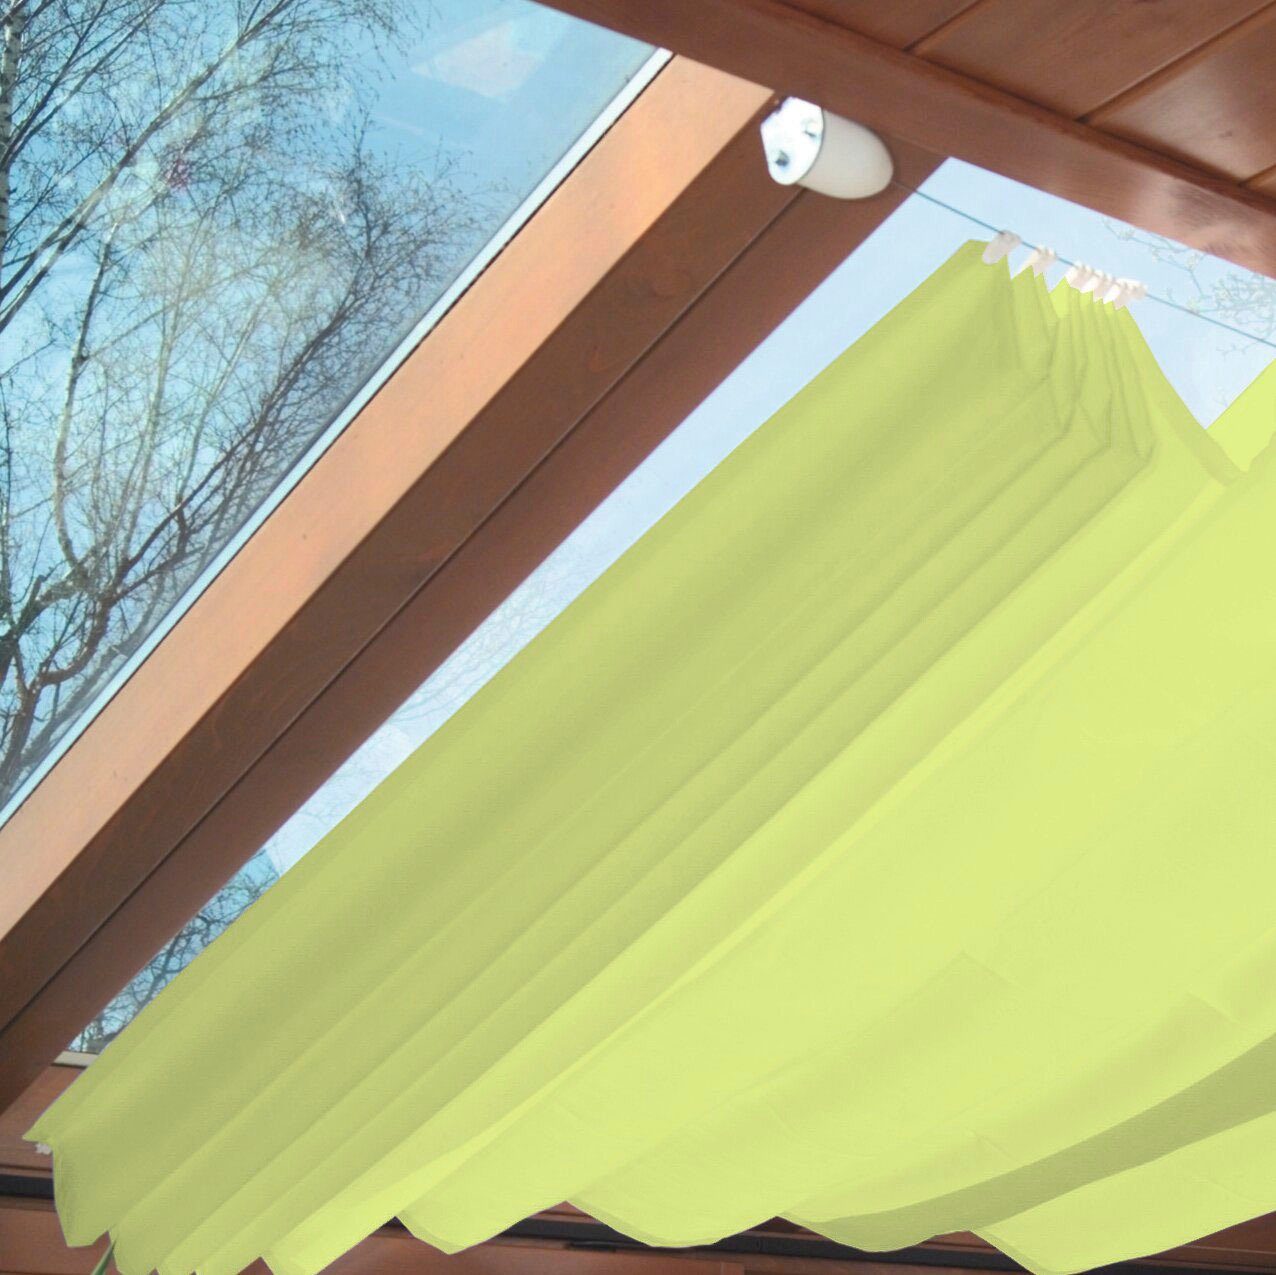 Windhager Seilspannsonnensegel, Sonnensegel für Seilspanntechnik, 2,7x1,4 m  online kaufen | OTTO